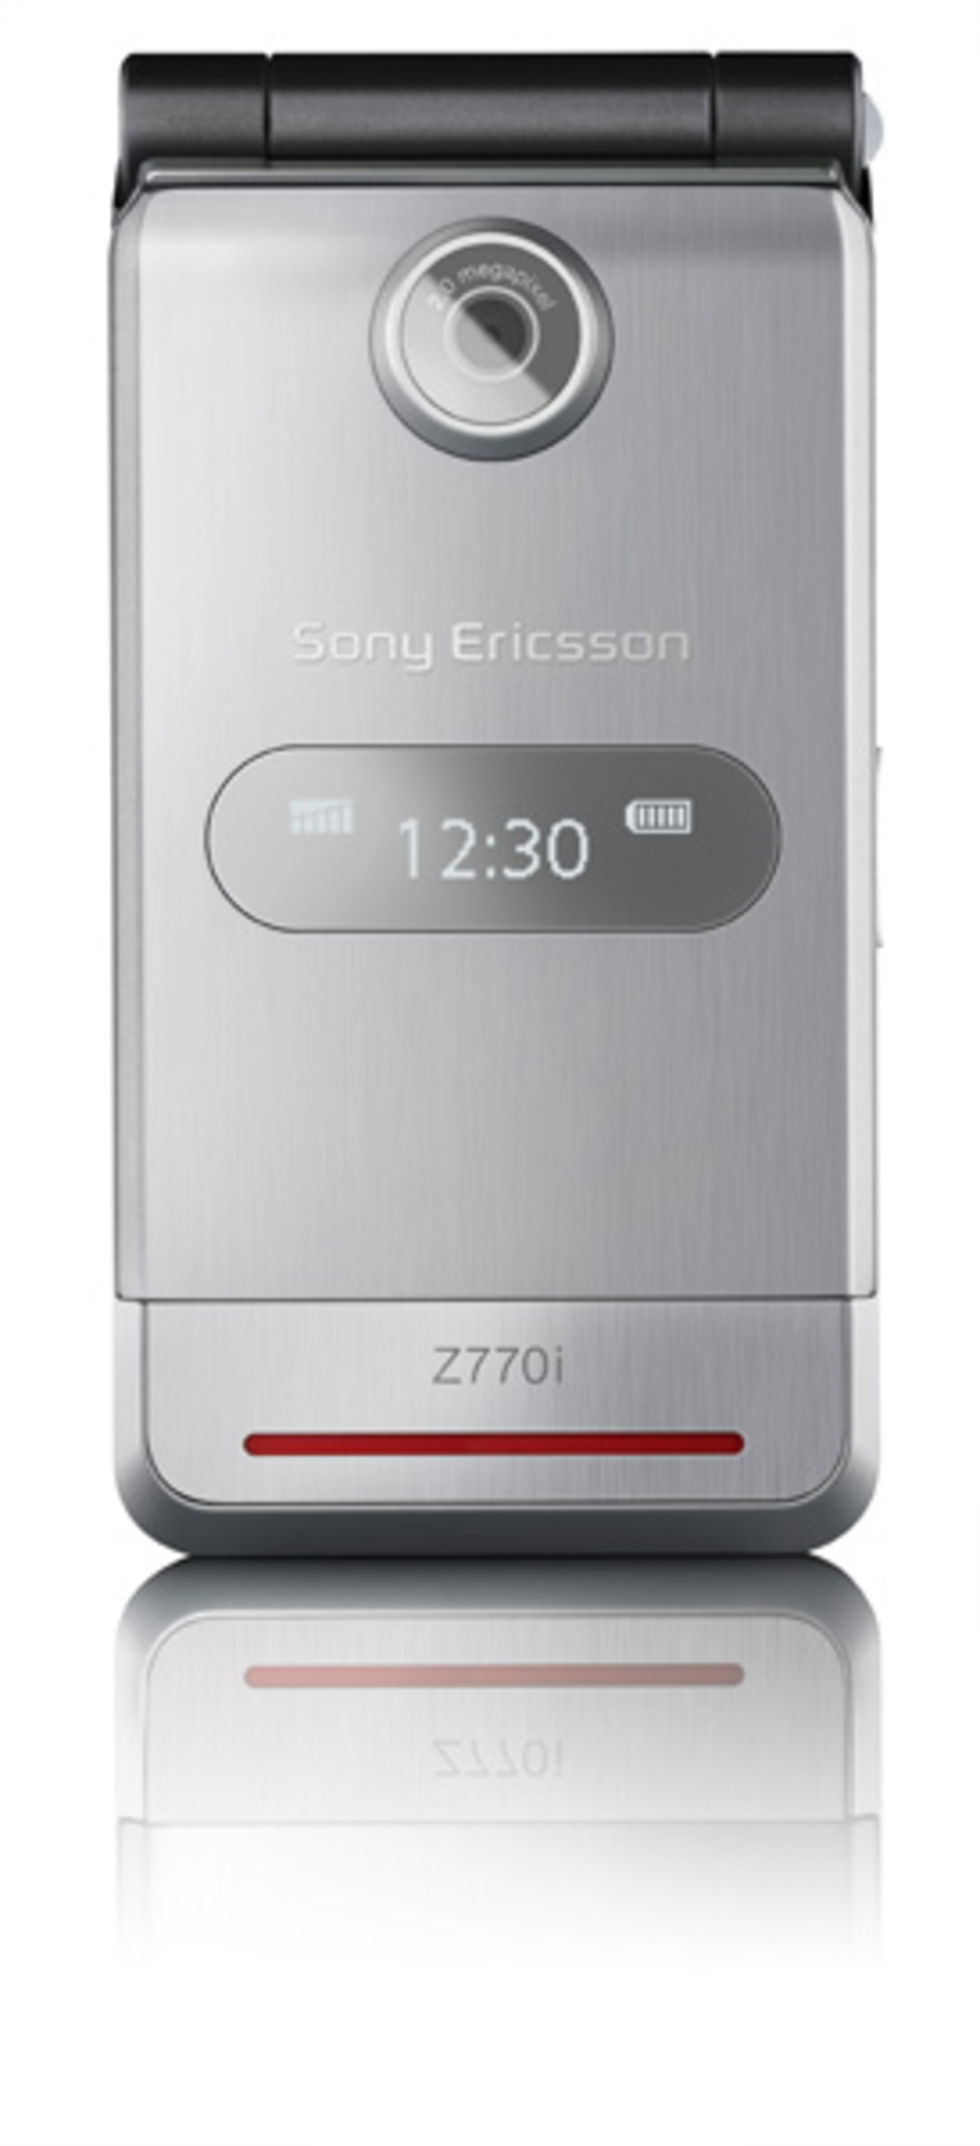 Sony Ericsson z770